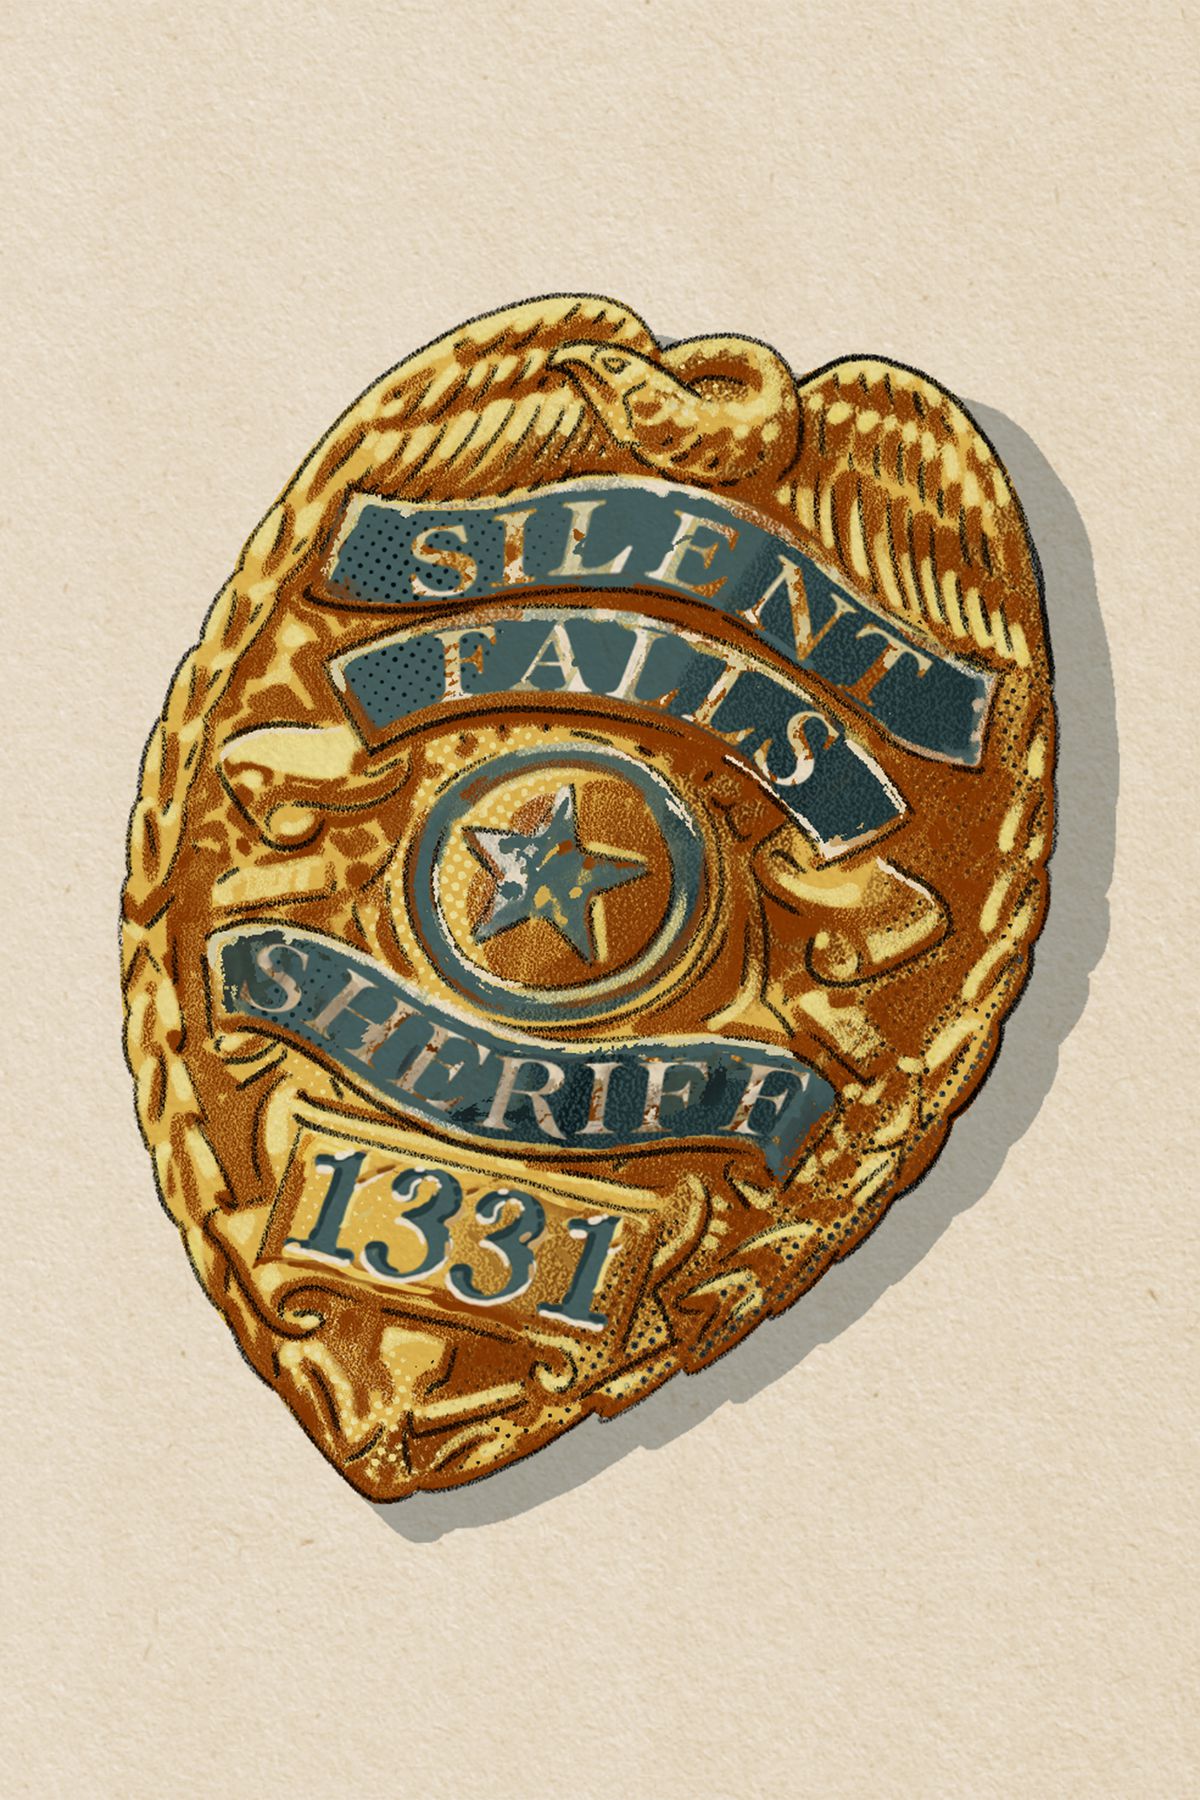 Un distintivo del dipartimento dello sceriffo di Silent Falls, numero 1221. Oro con una stella al centro.